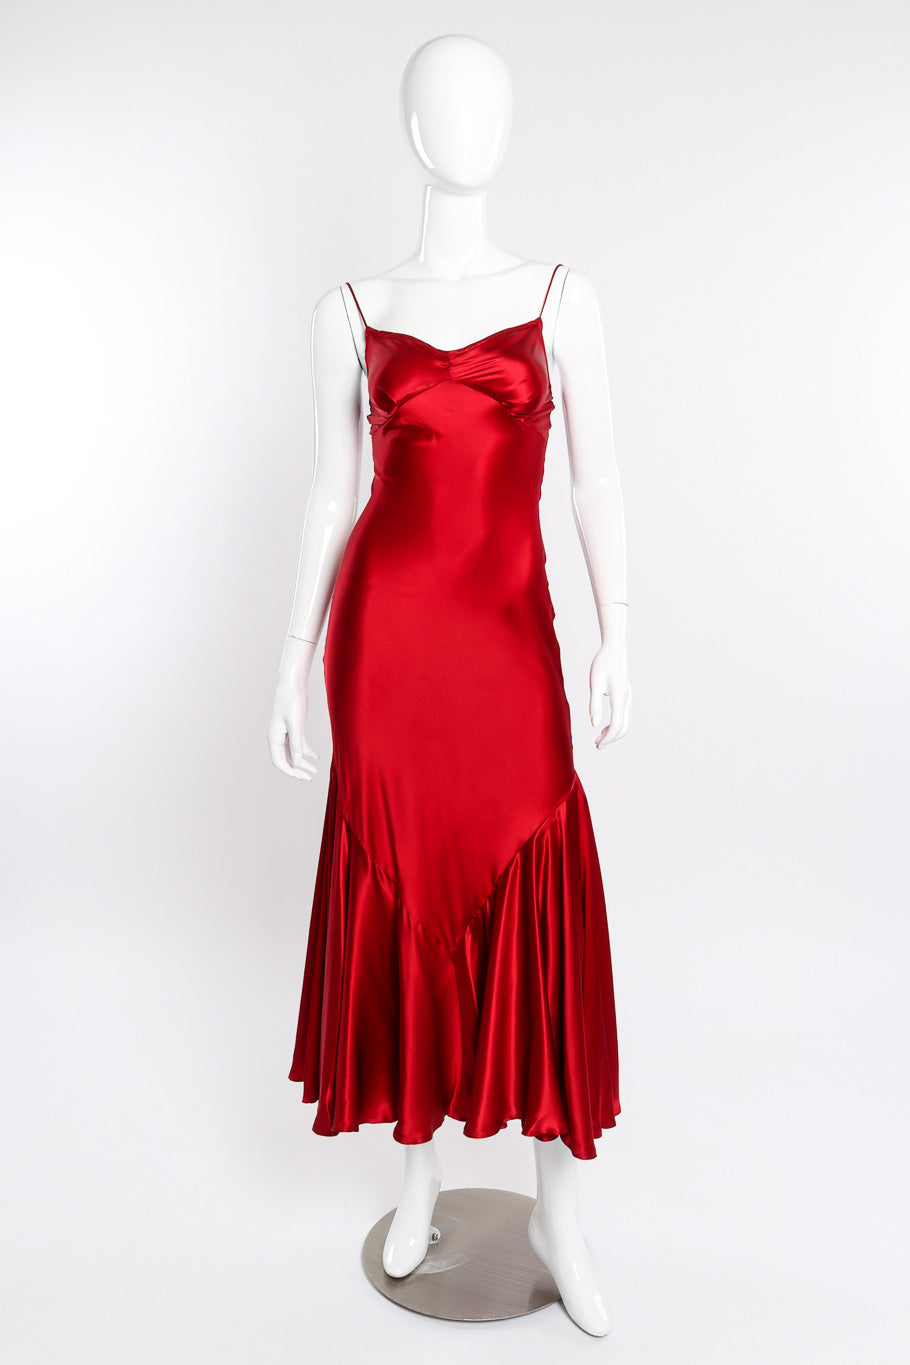 Satin slip dress by Bonnie Strauss on mannequin @recessla